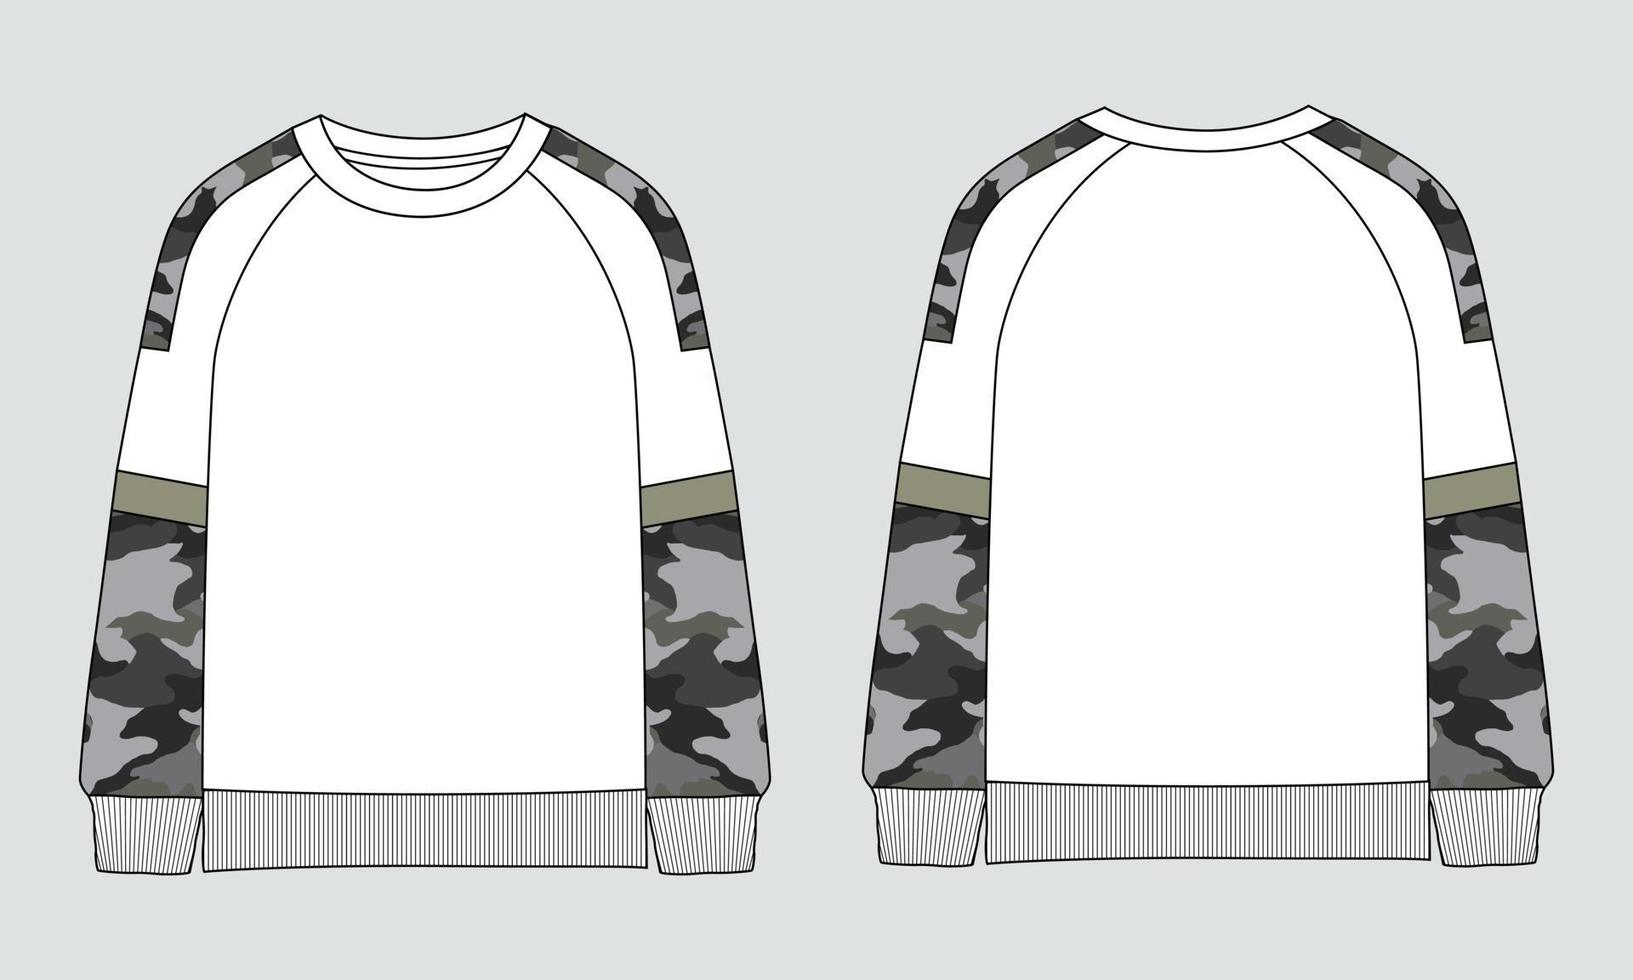 sweatshirt met lange mouwen technische mode platte schets vector illustratie sjabloon